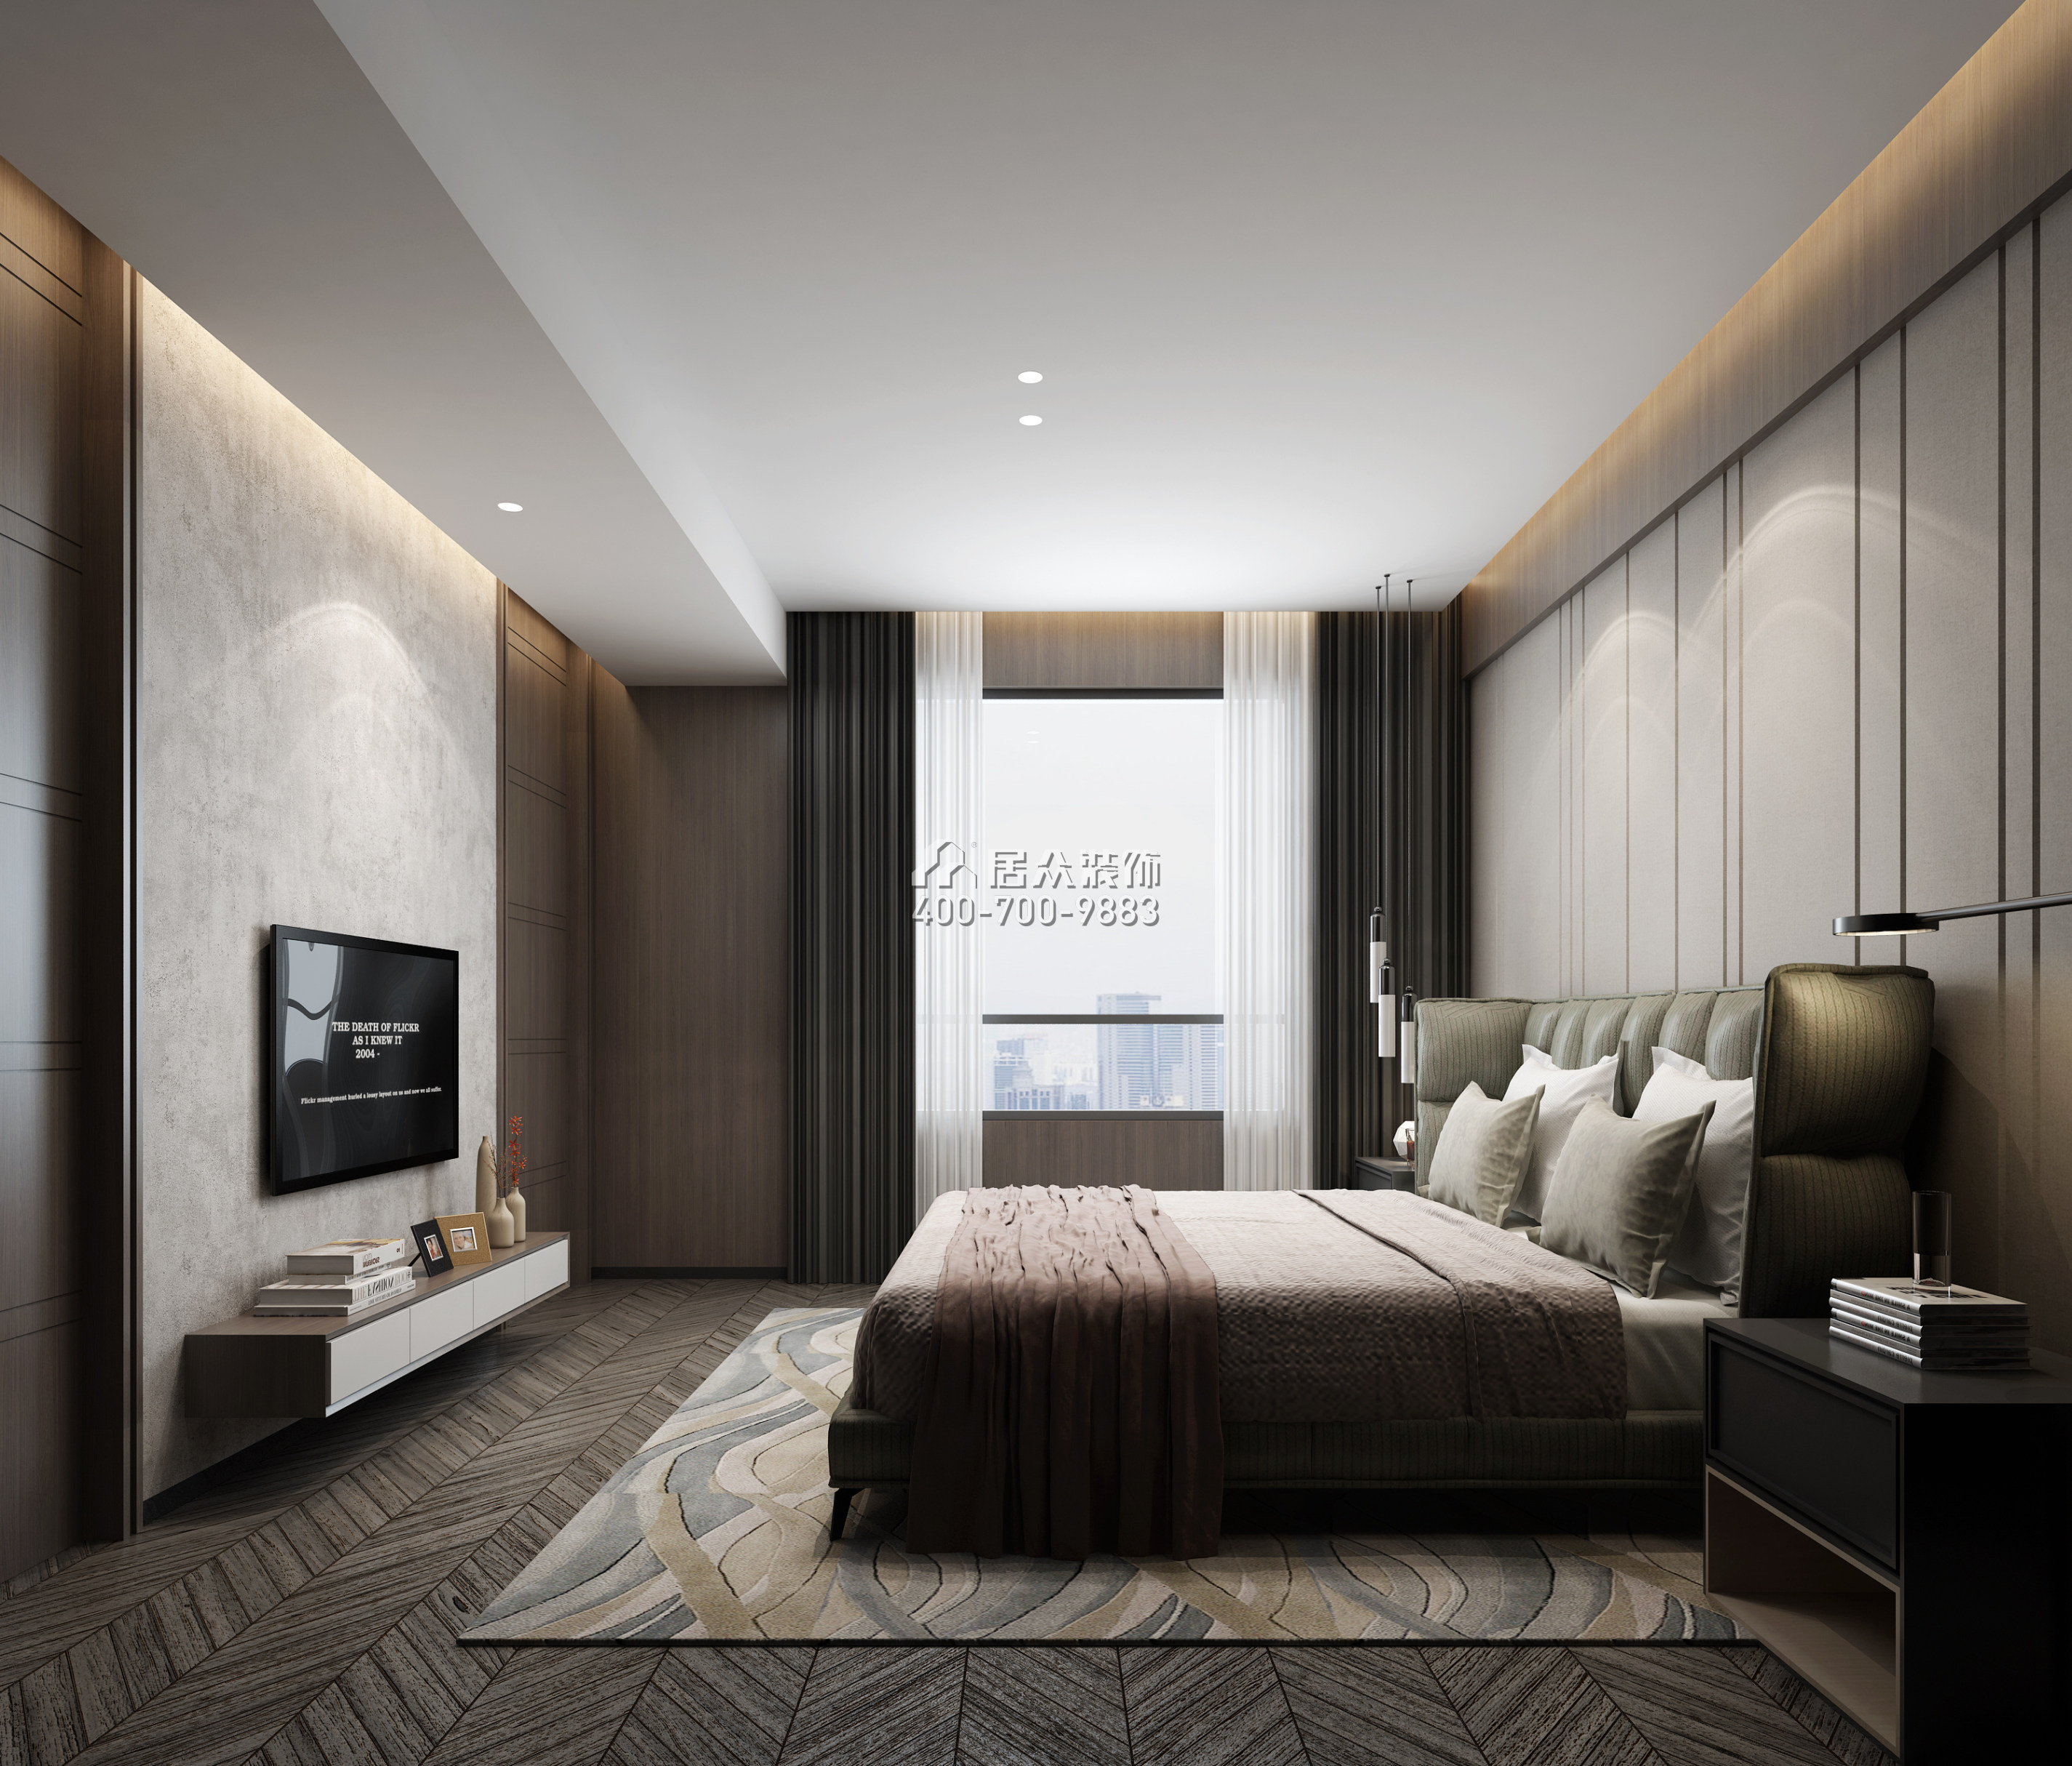 天骄峰景226平方米现代简约风格平层户型卧室装修效果图